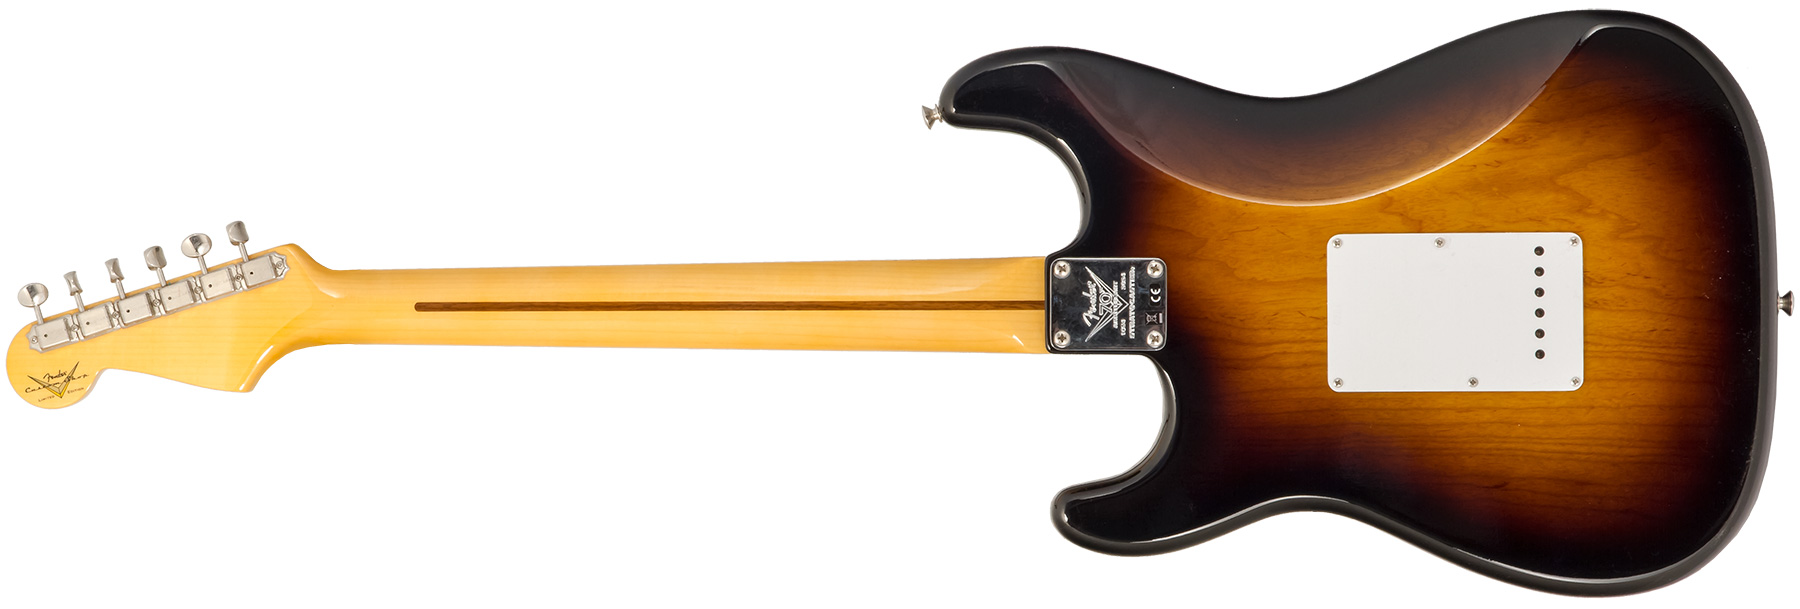 Fender Custom Shop Strat 1954 70th Anniv. #xn4611 3s Trem Mn - Time Capsule Wide Fade 2-color Sunburst - Elektrische gitaar in Str-vorm - Variation 2